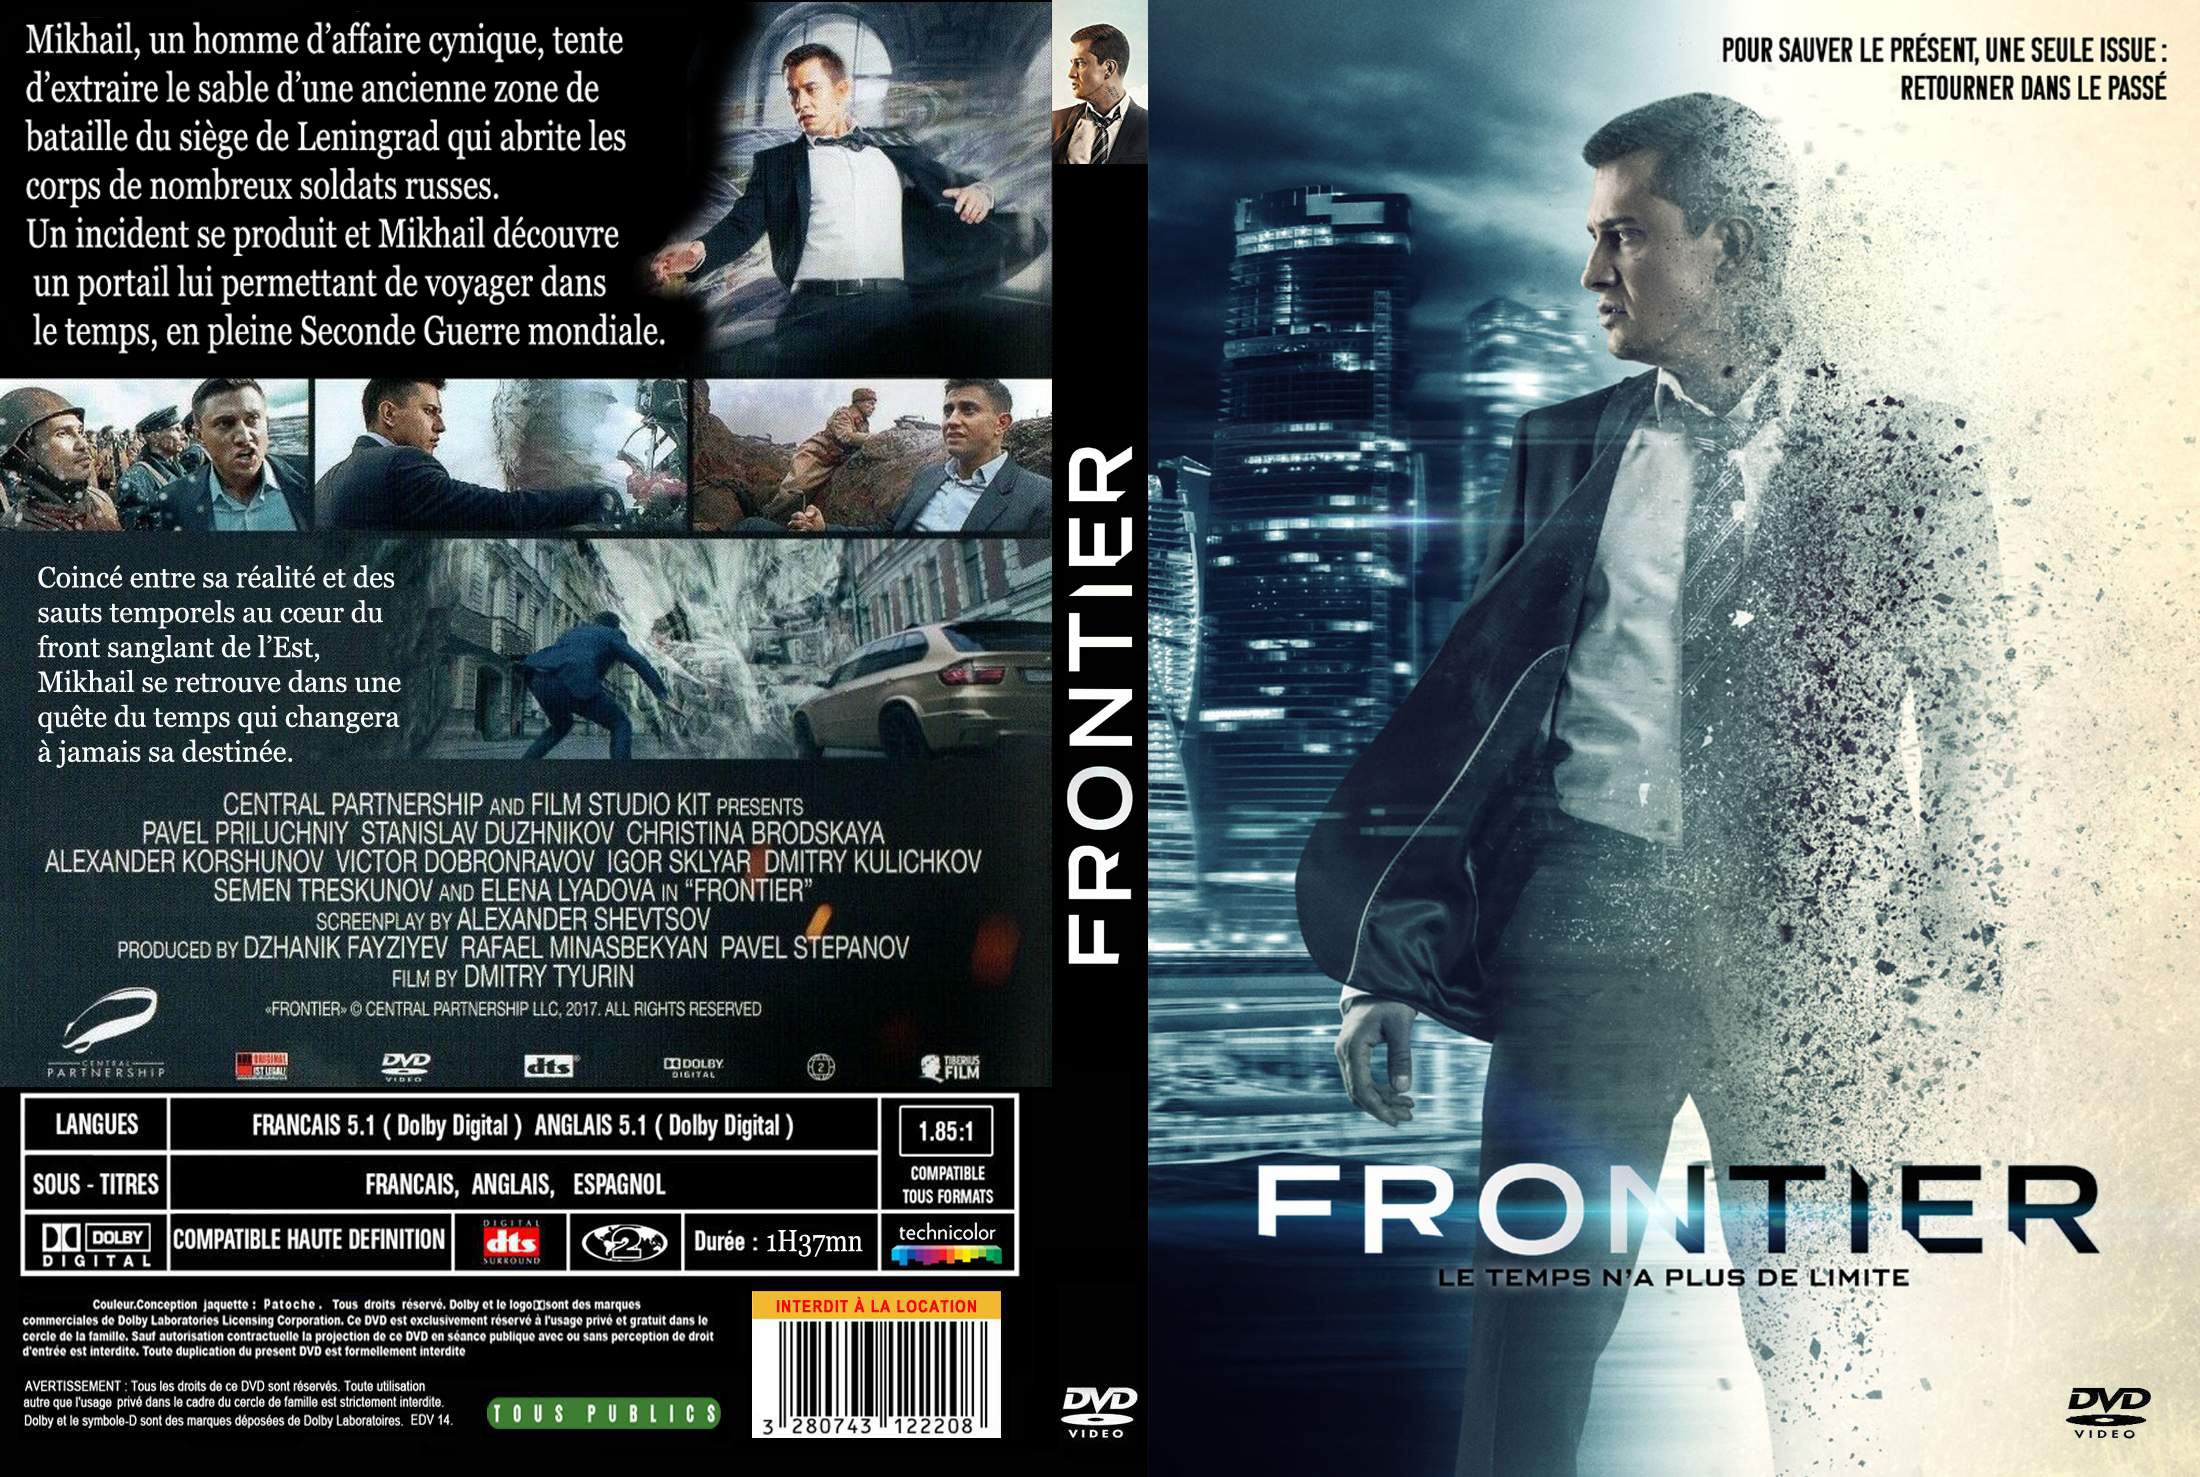 Jaquette DVD Frontier custom